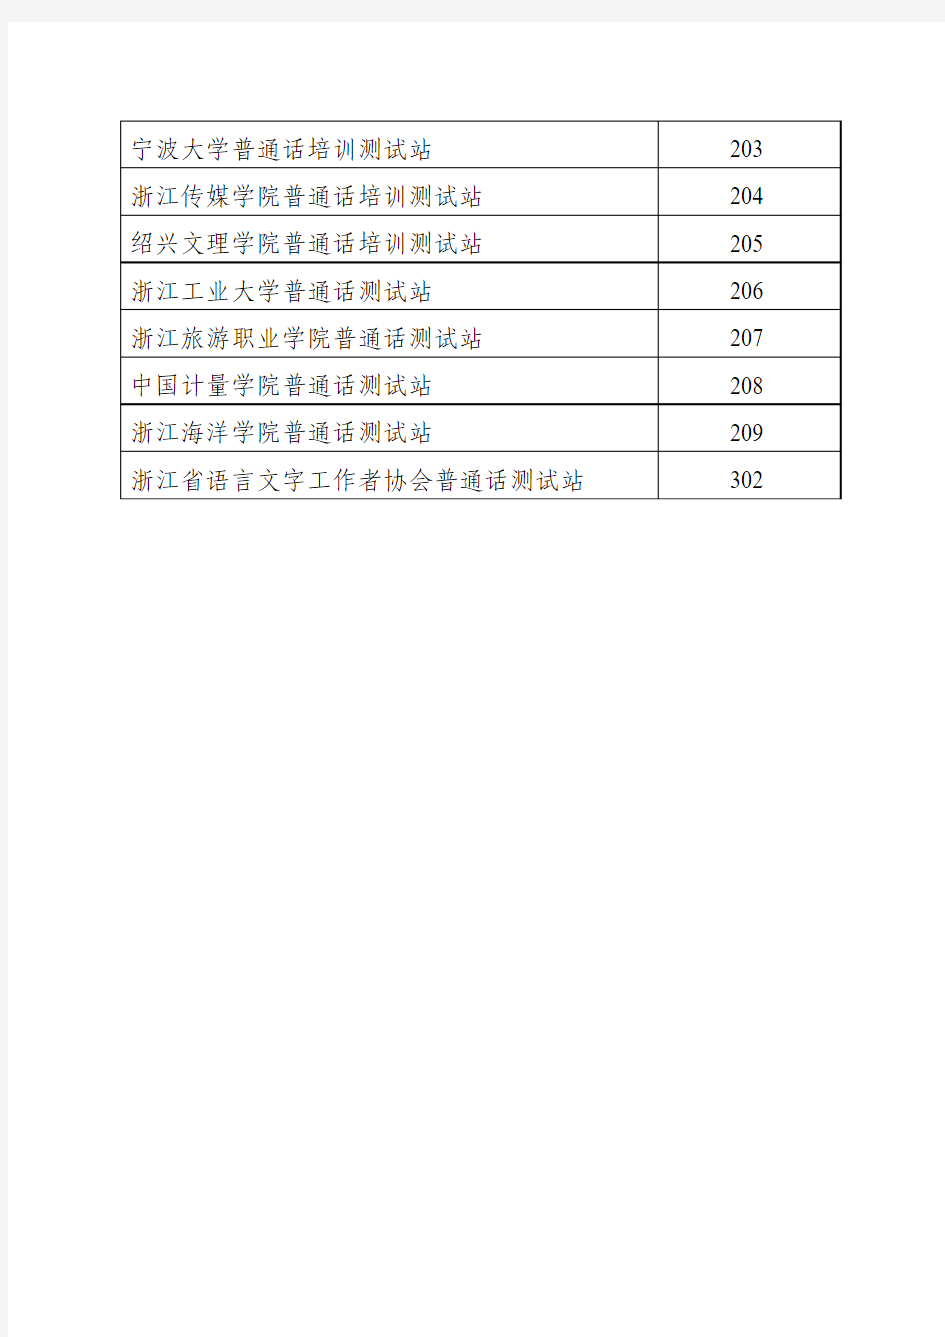 浙江省2015―2016年具有普通话水平测试资格的测试机构 …